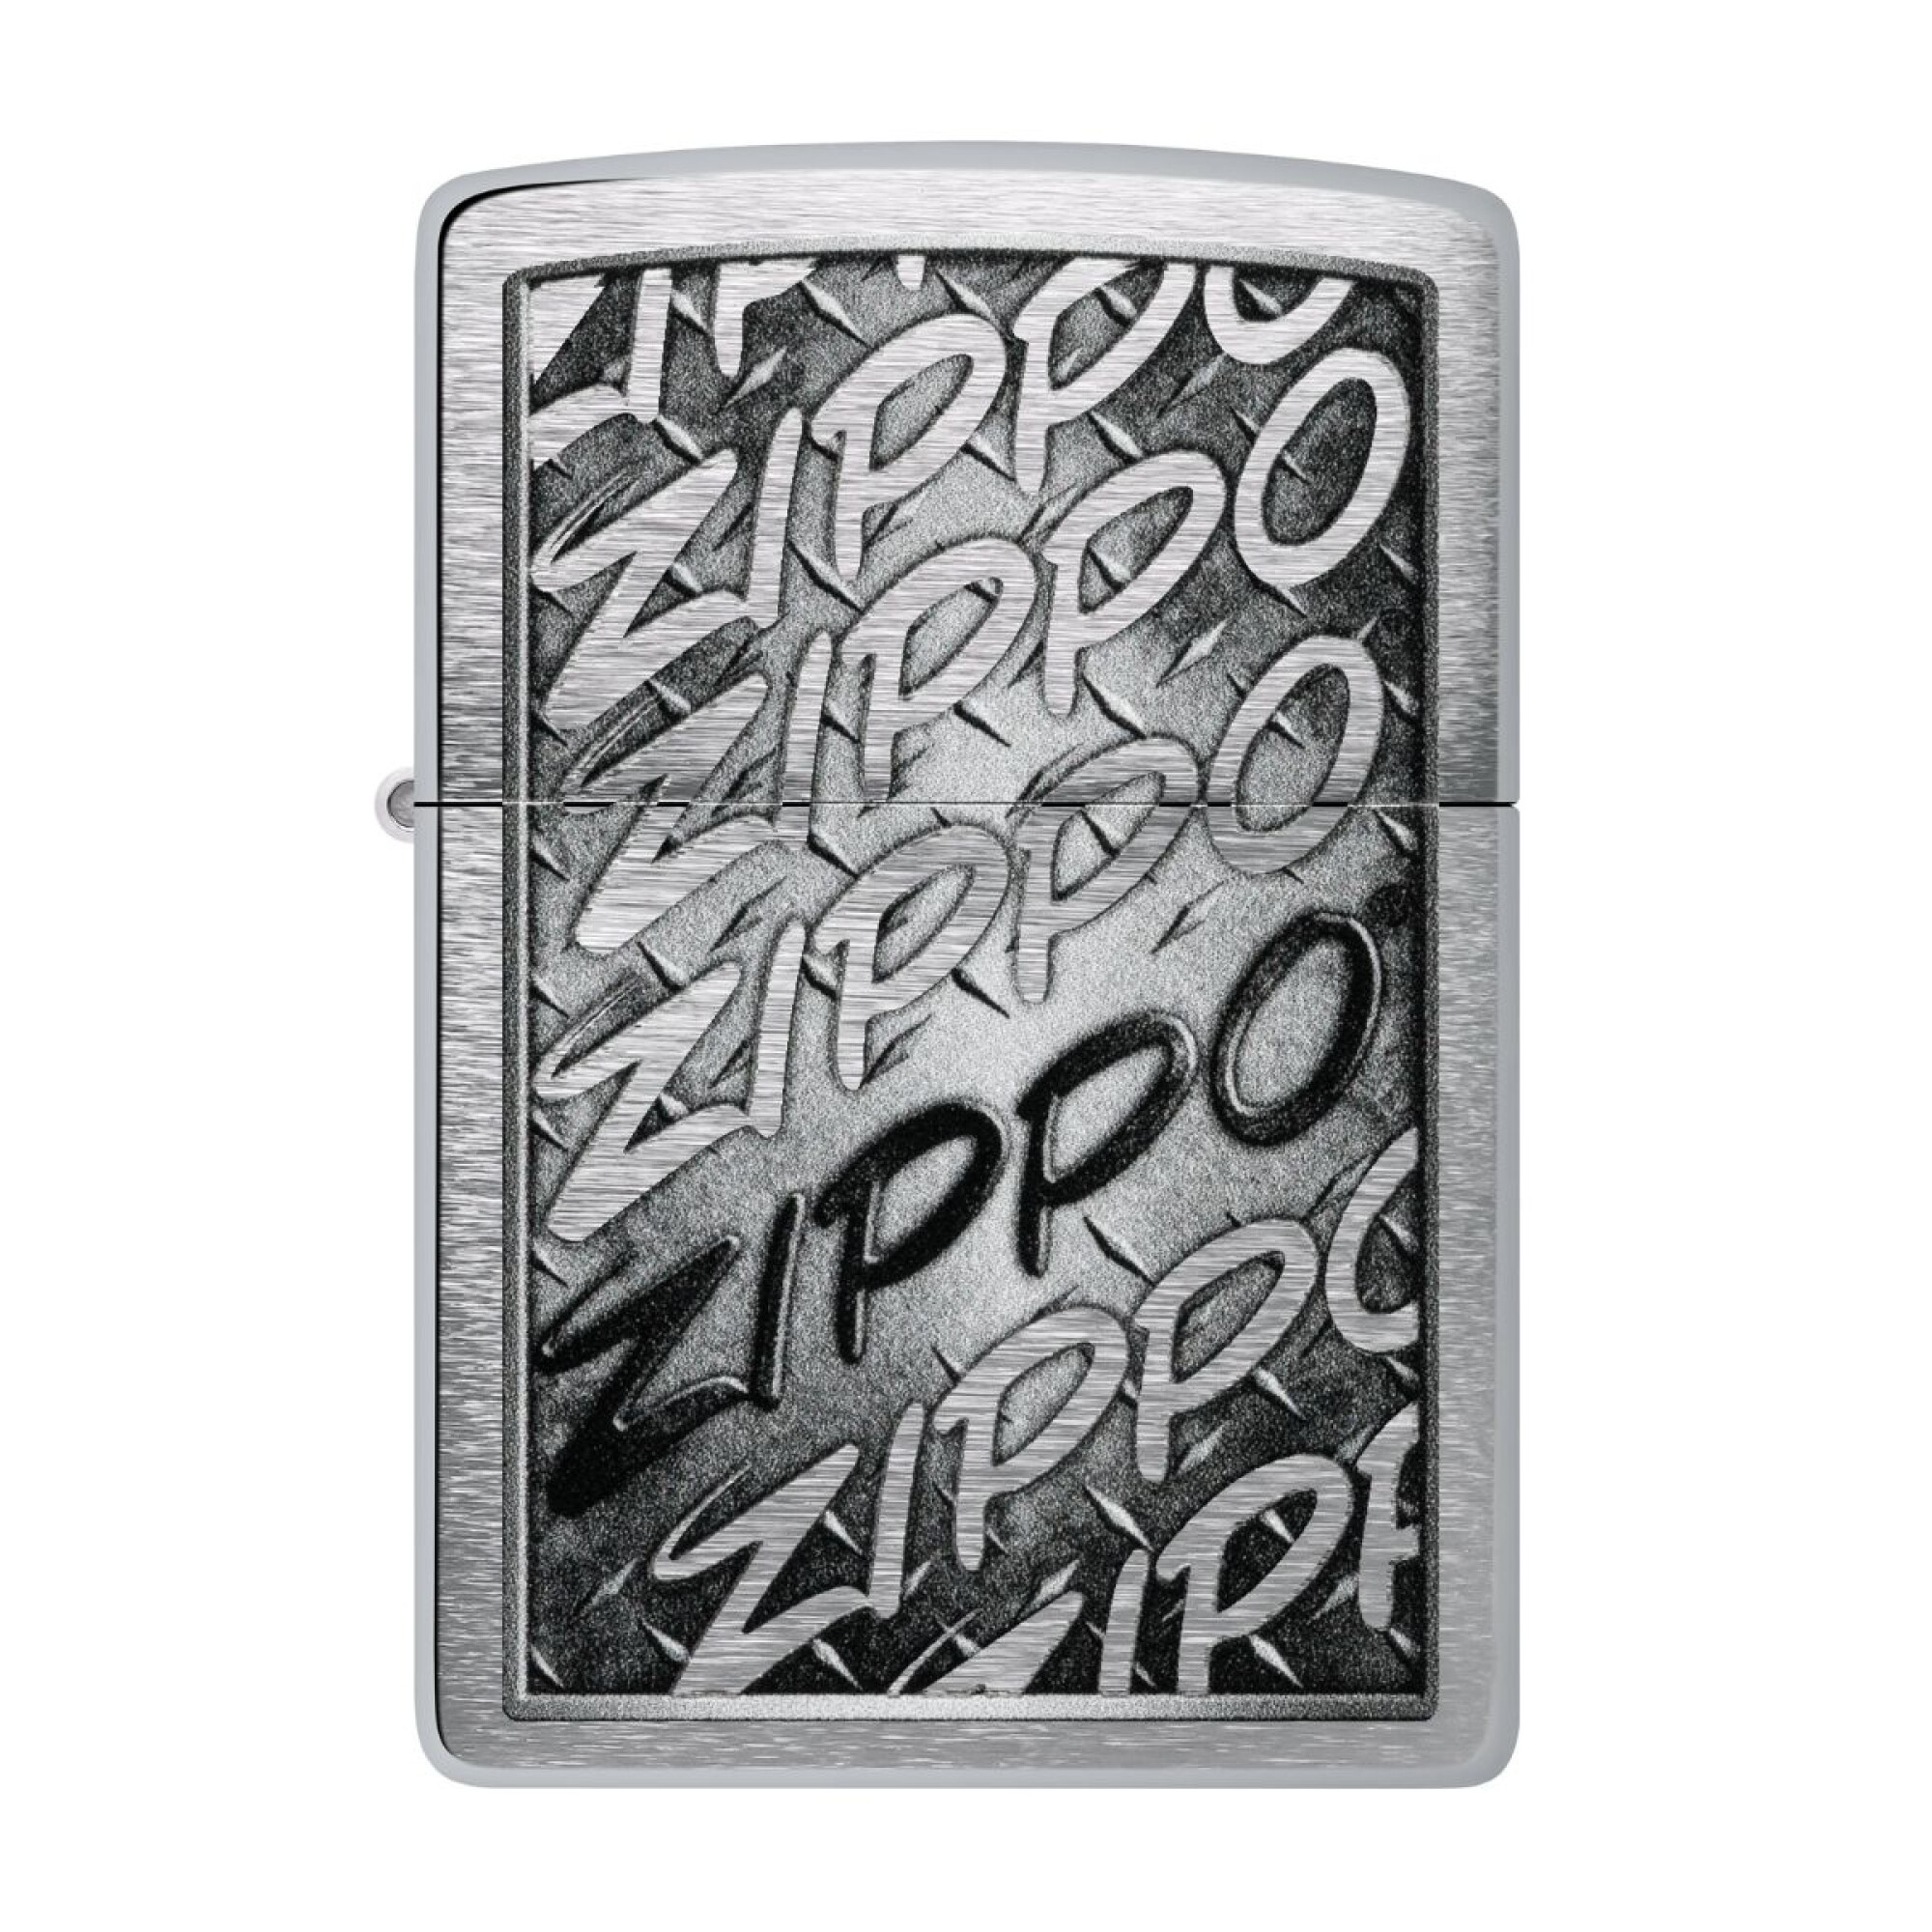 ZIPPO, Accesorios originales de Zippo.